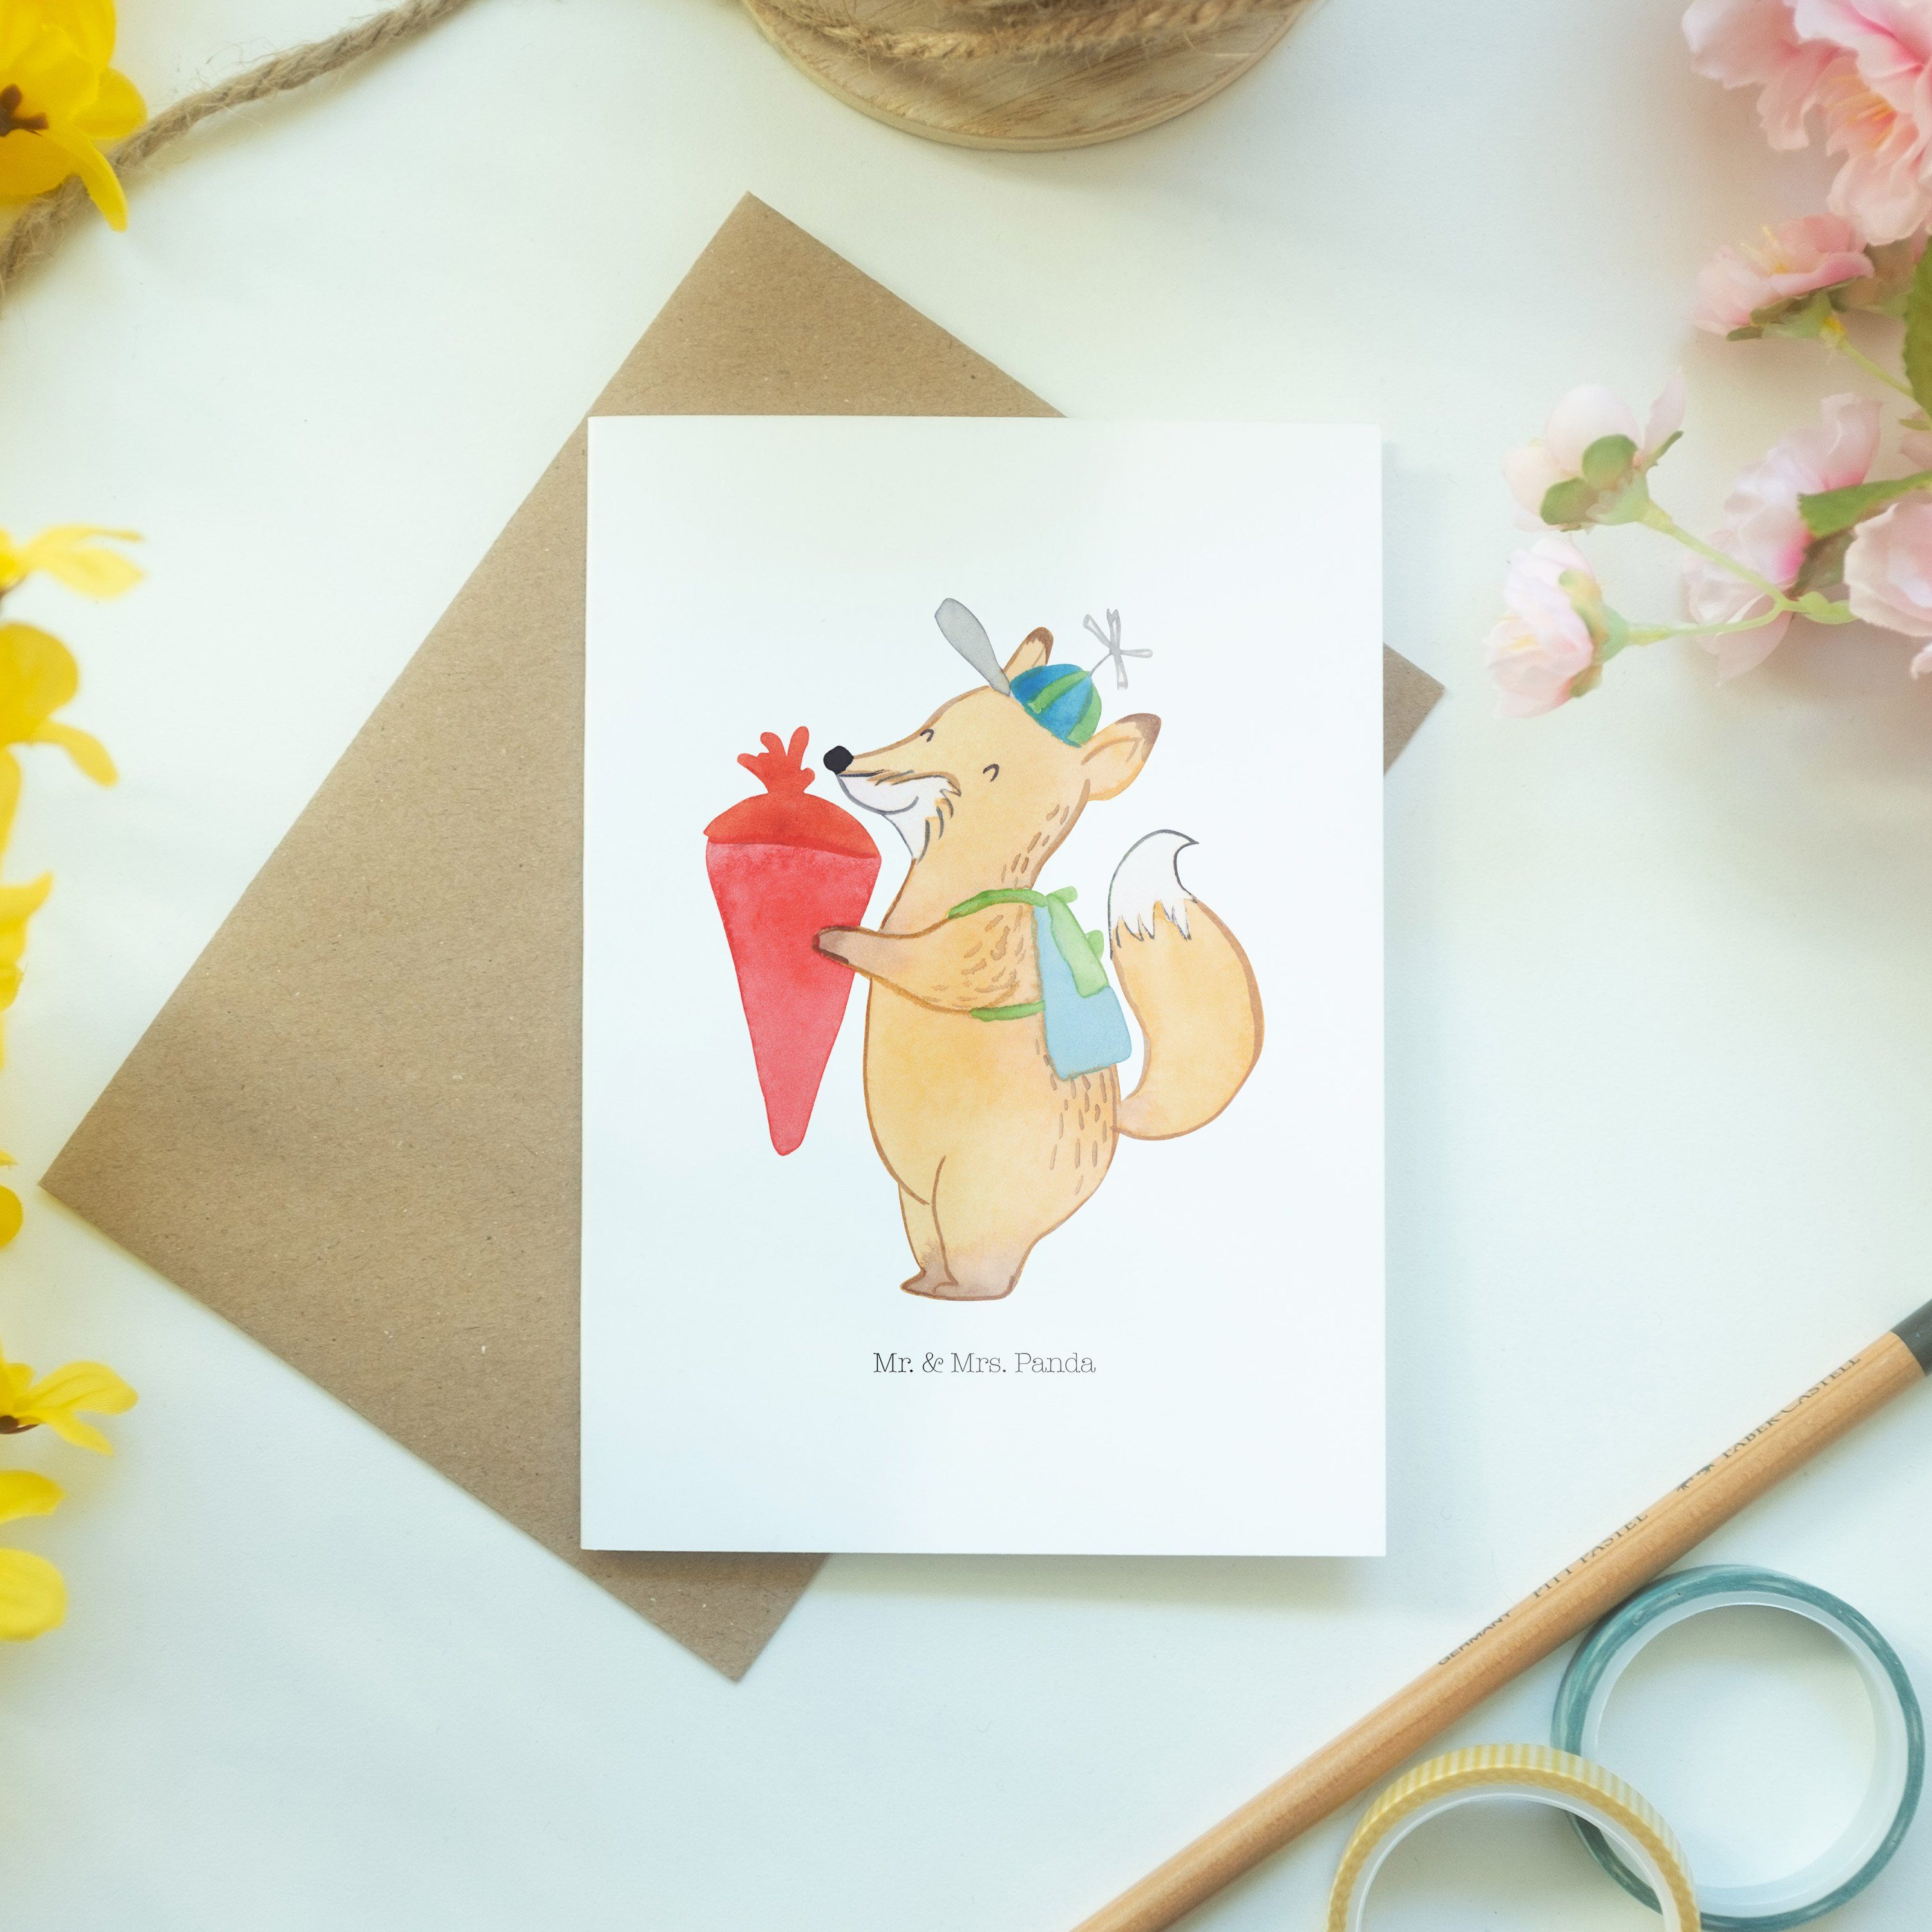 Mr. & Mrs. Sprüche, - Weiß Grußkarte Geburtstagskarte - Panda Geschenk, Fuchs Schulkind lustige